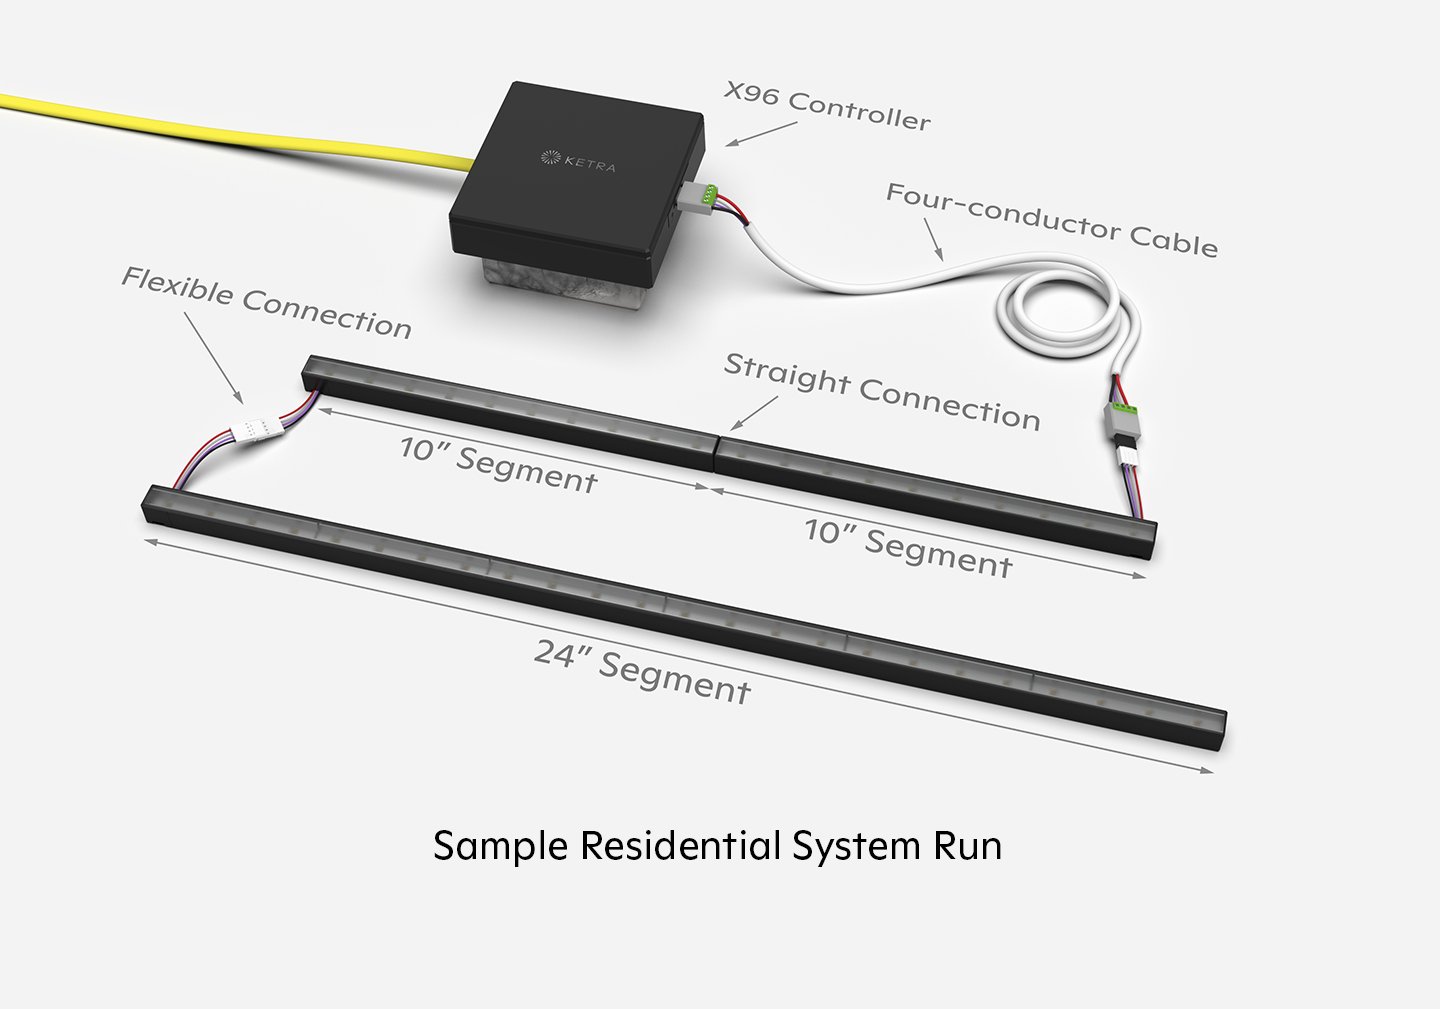 lightbar-slim-sample-residential-system-run